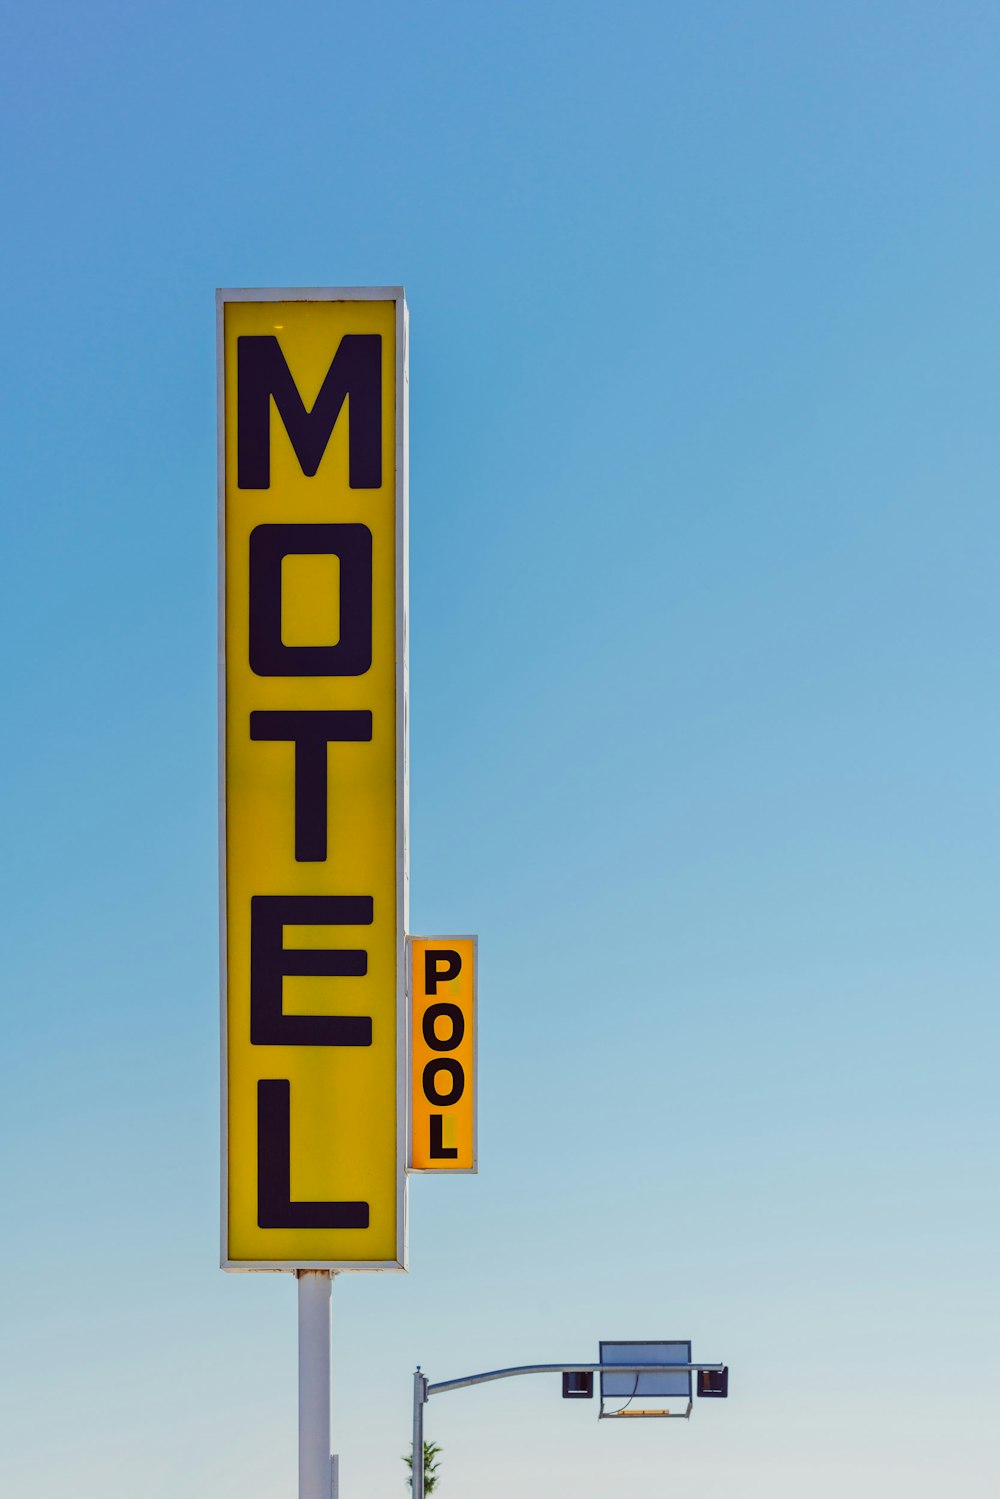 Señalización amarilla y negra de Motel tomada durante el día